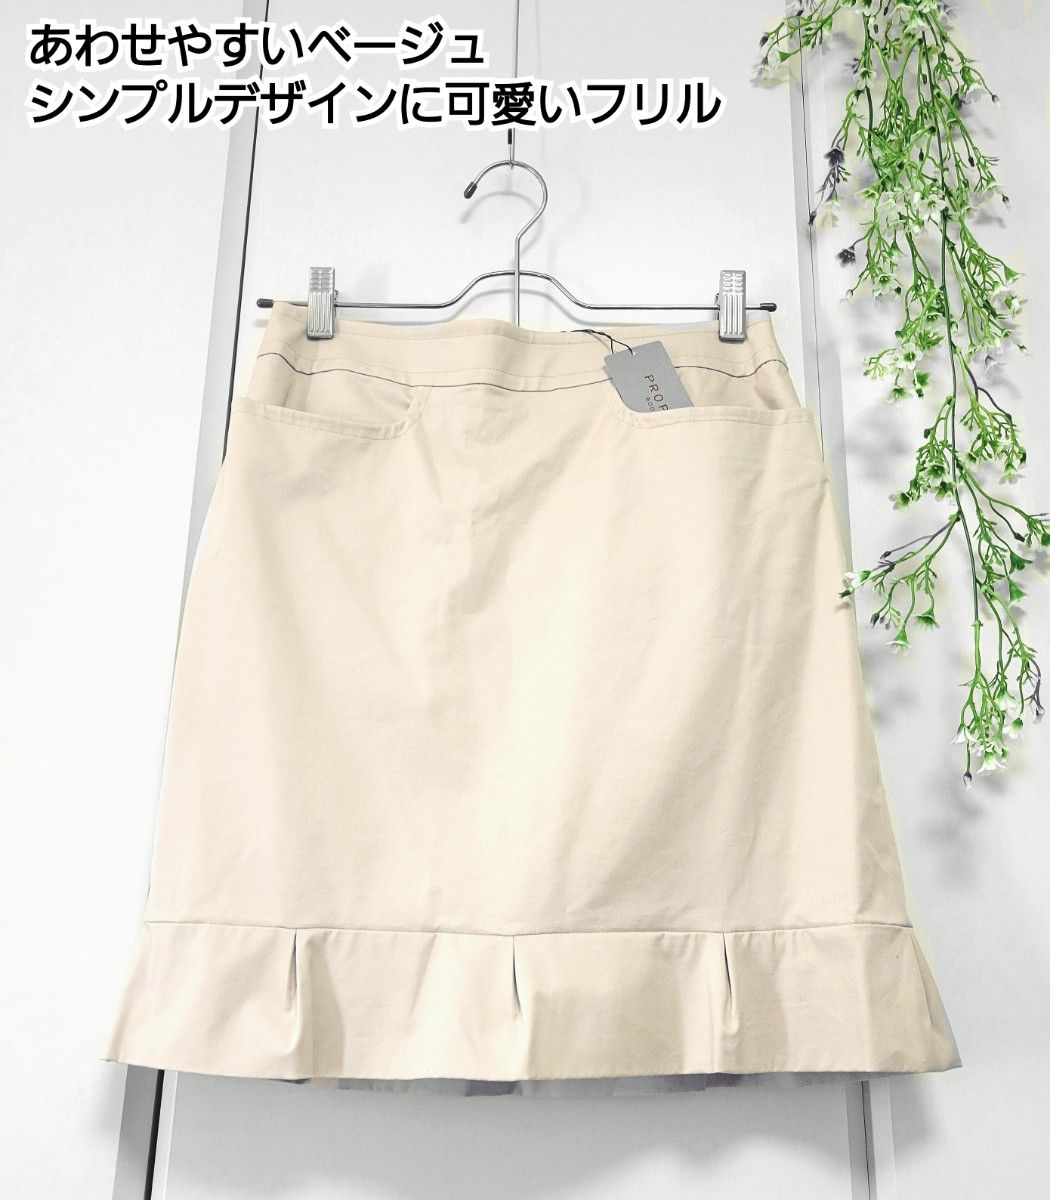 PROPOTION BODY DRESSING 裾フリル ベージュ 美シルエット タイト  スカート S~M/2